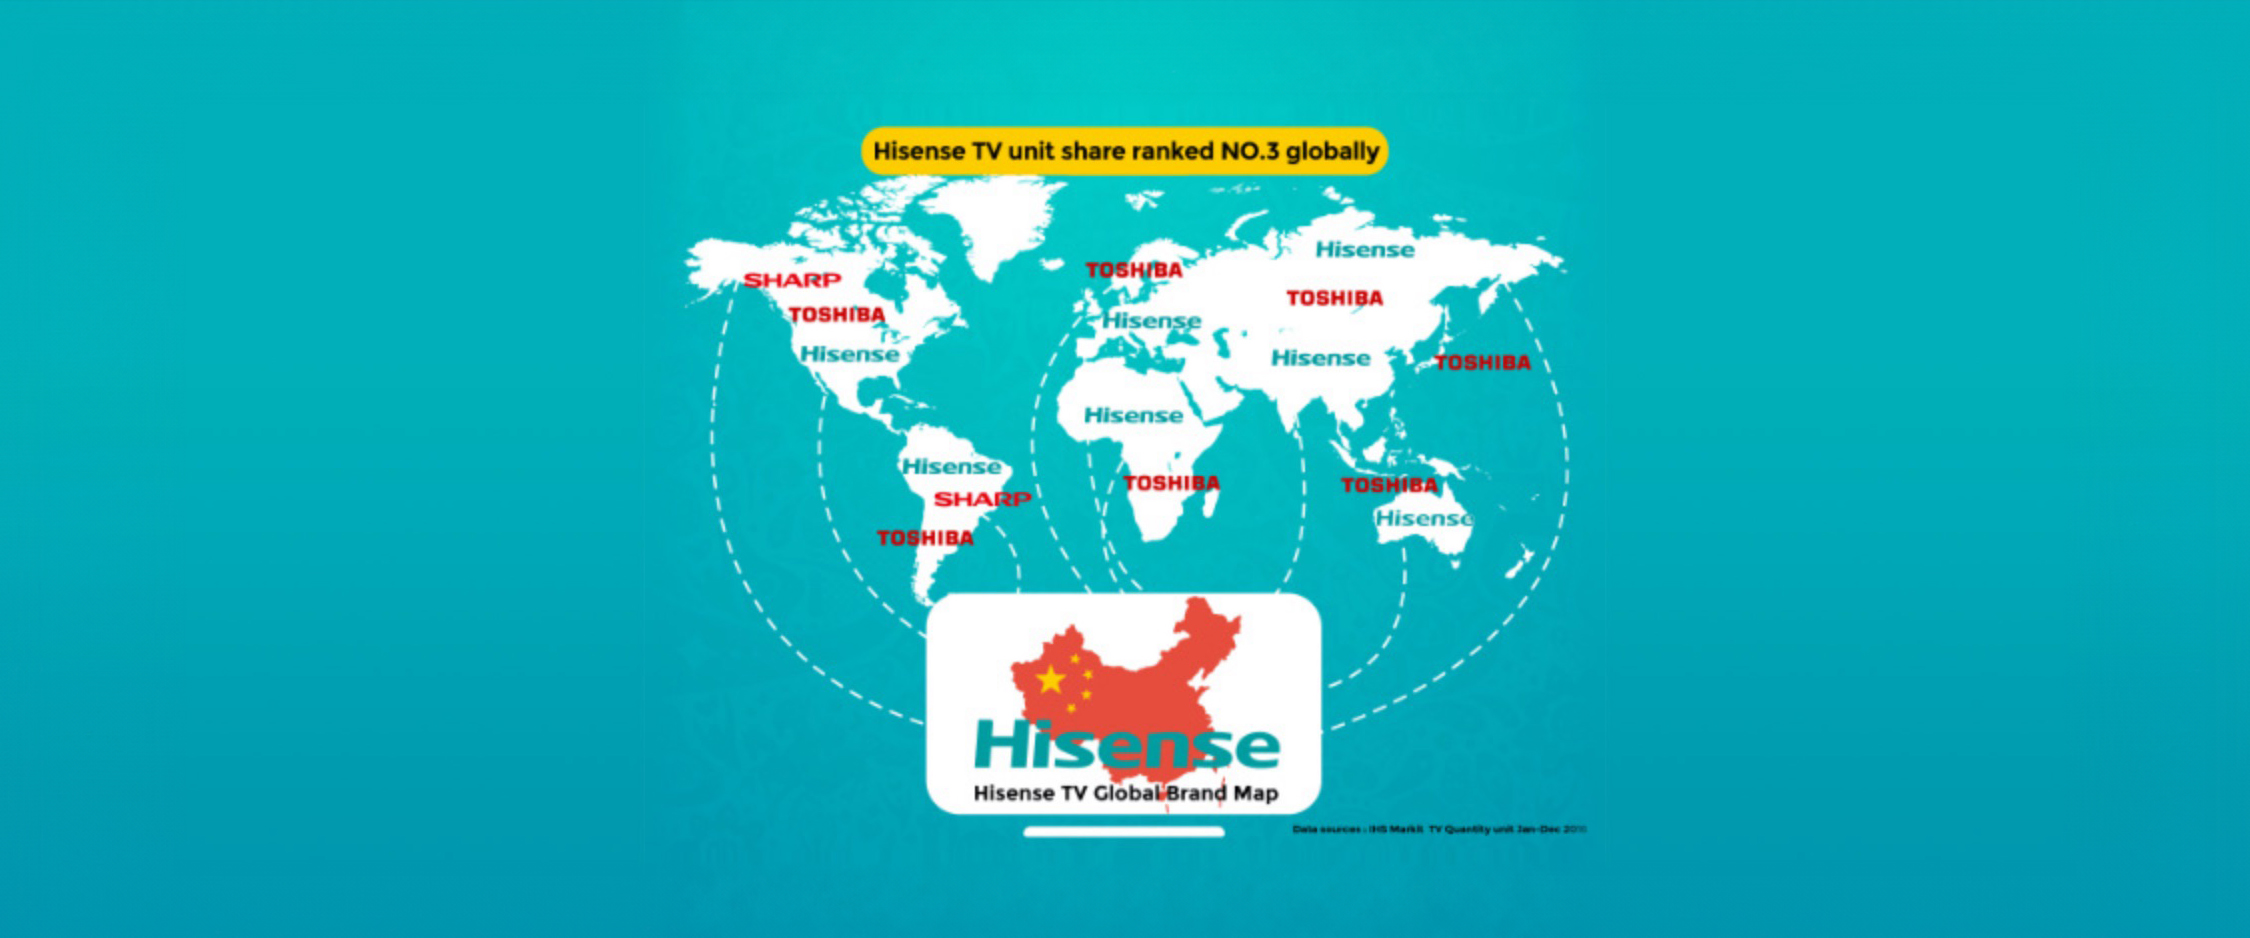 Il 14 novembre Hisense Electric Co. Ltd annuncia l’acquisto dei servizi di produzione, marchio, ricerca e sviluppo e gestione dei televisori Toshiba.